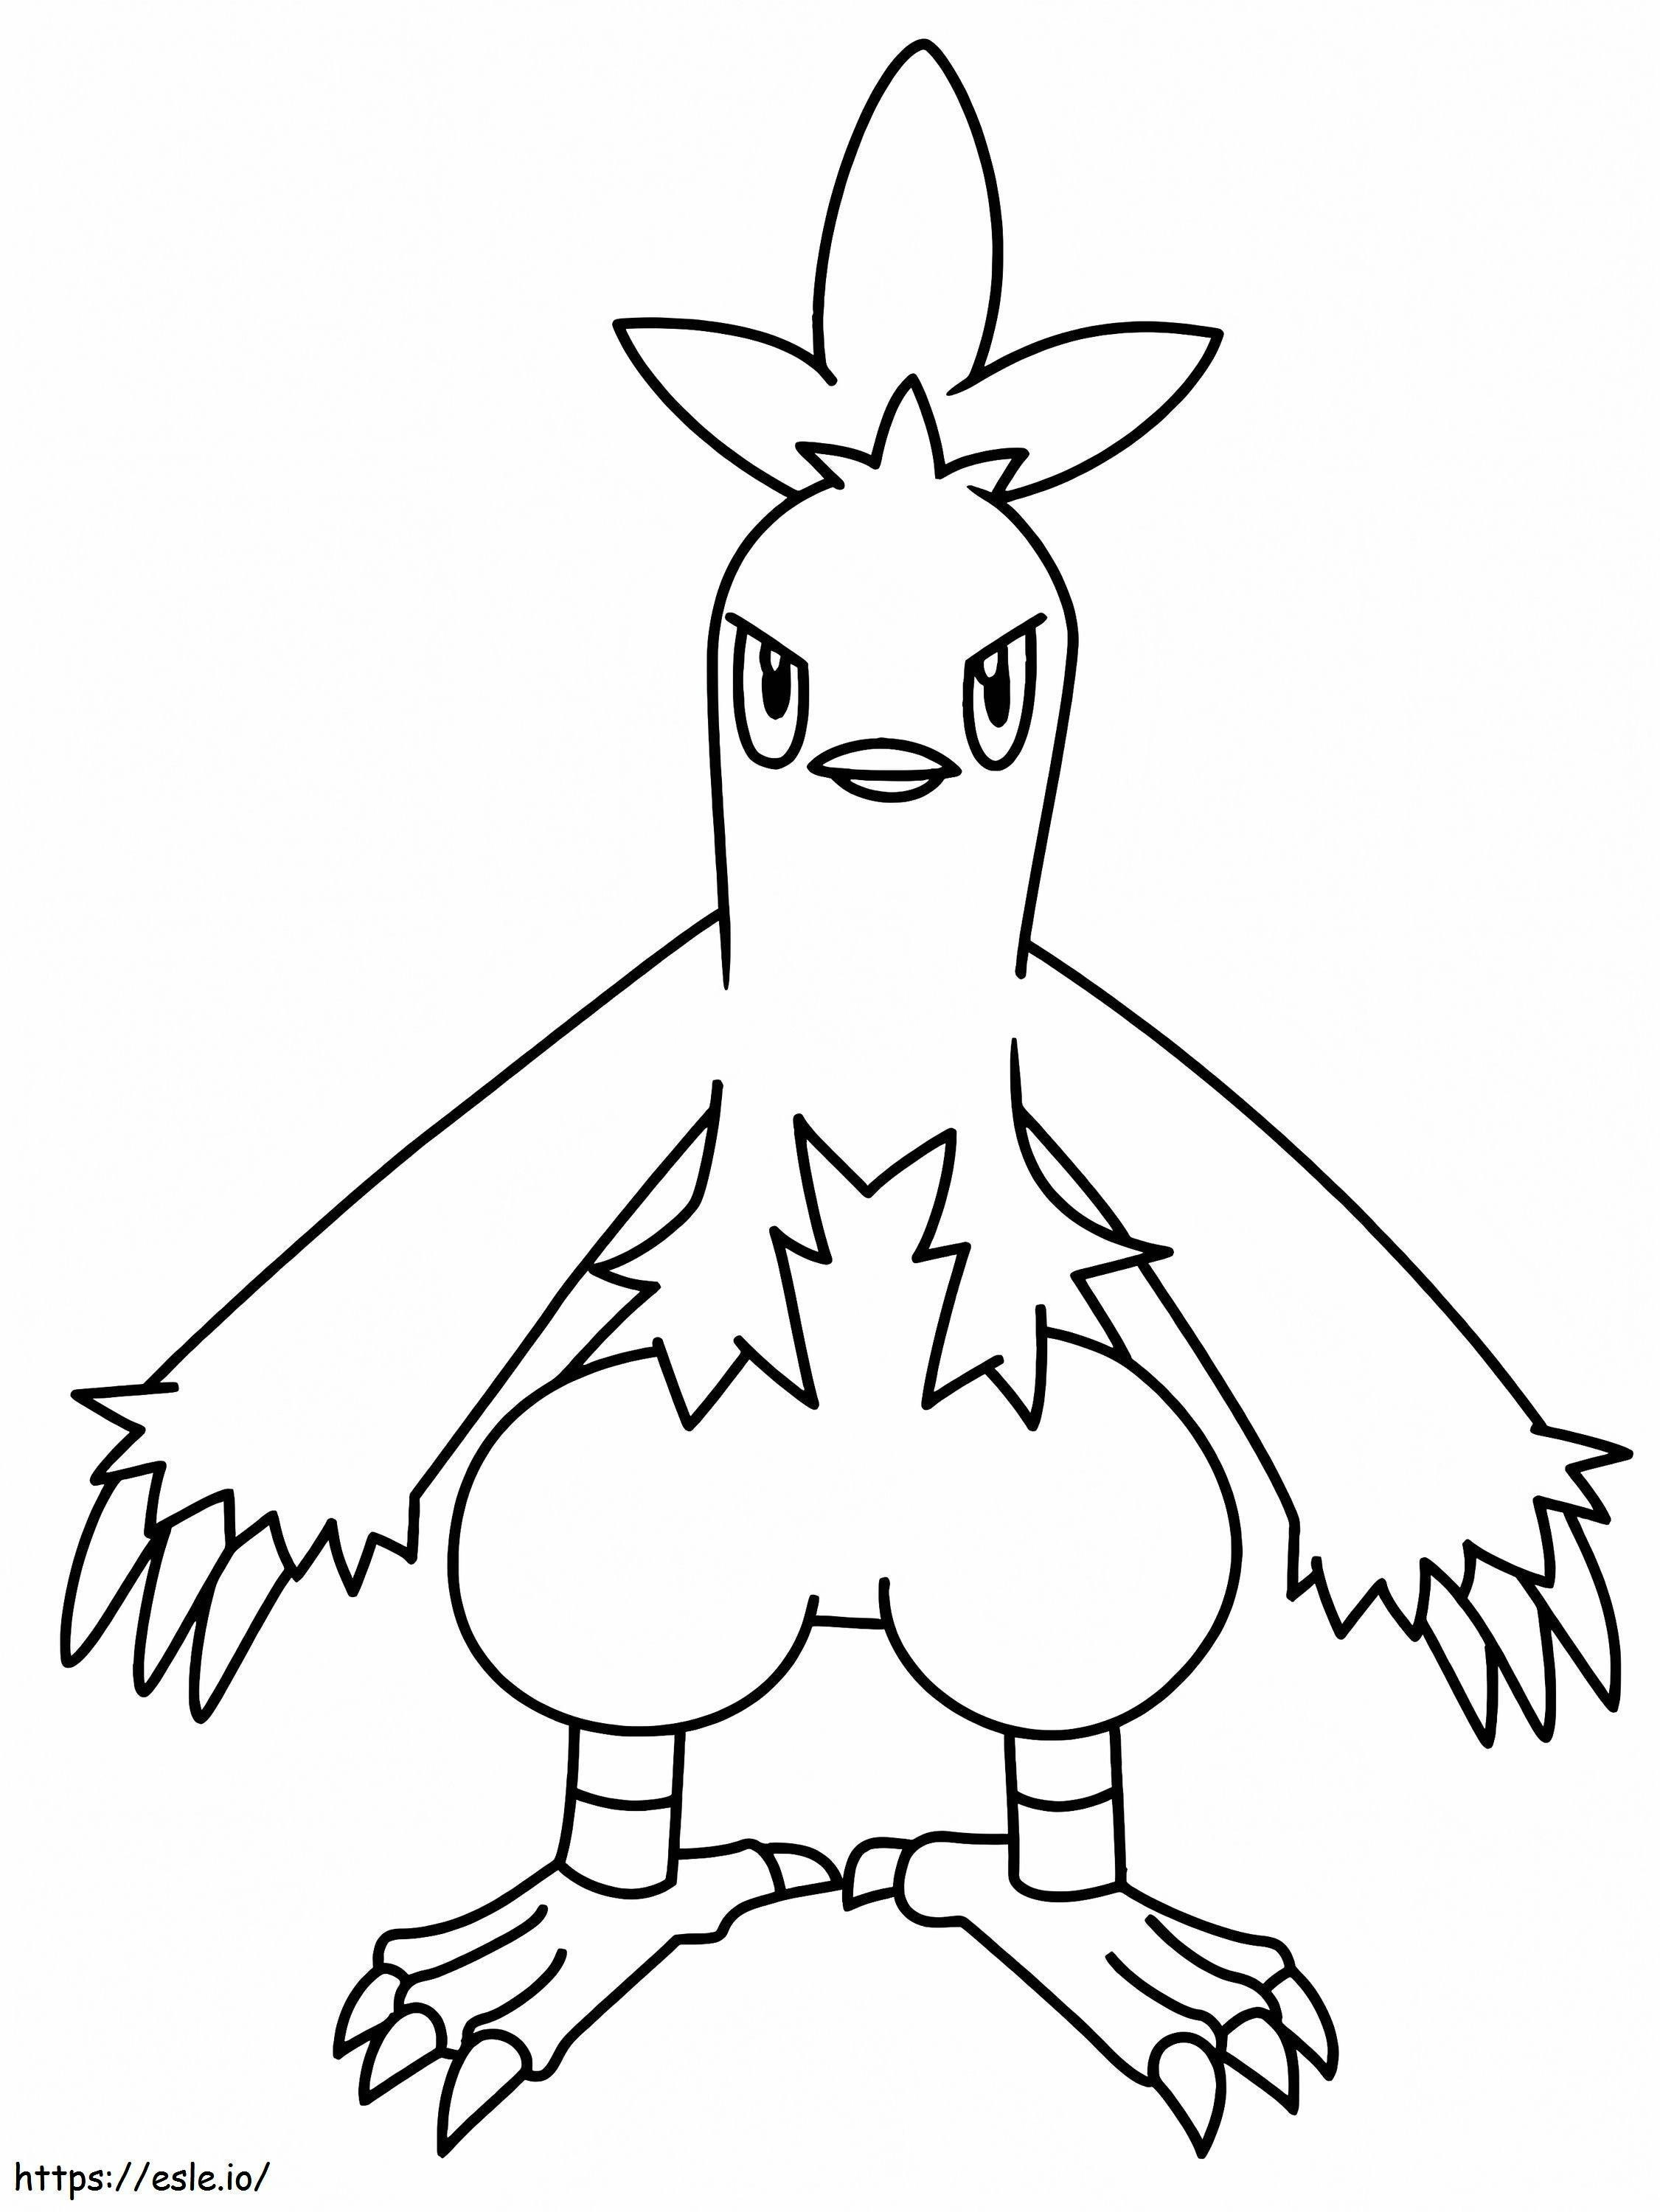 Coloriage Pokémon Combusken Gen 3 à imprimer dessin